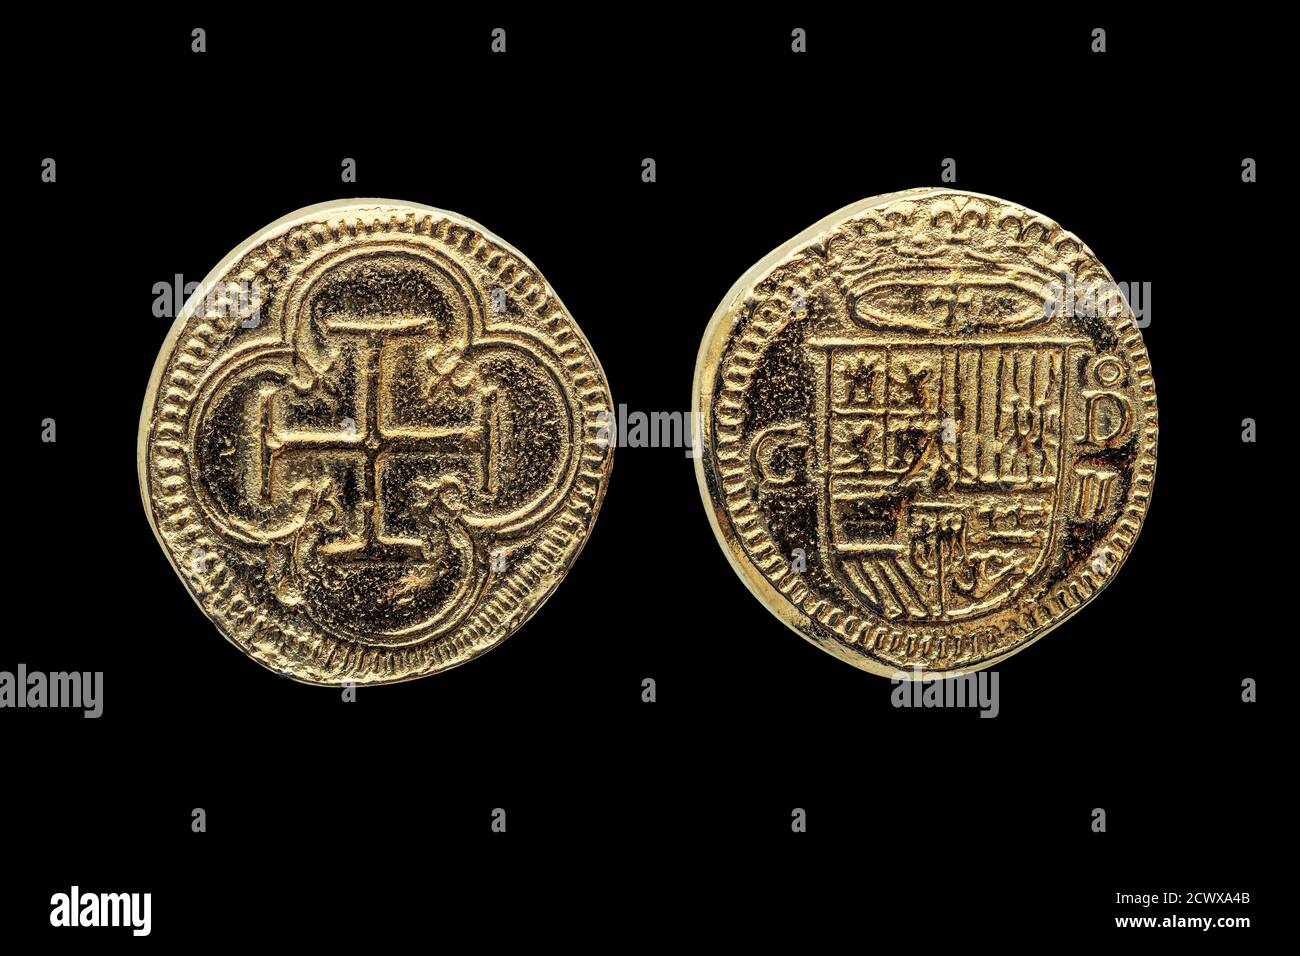 Gold Escudos réplique de pièce de monnaie de Philip II (Felipe II) De l'Espagne couronné bouclier Obverset Croix en quatrefoil coupe inversée et isolé sur un noir Banque D'Images